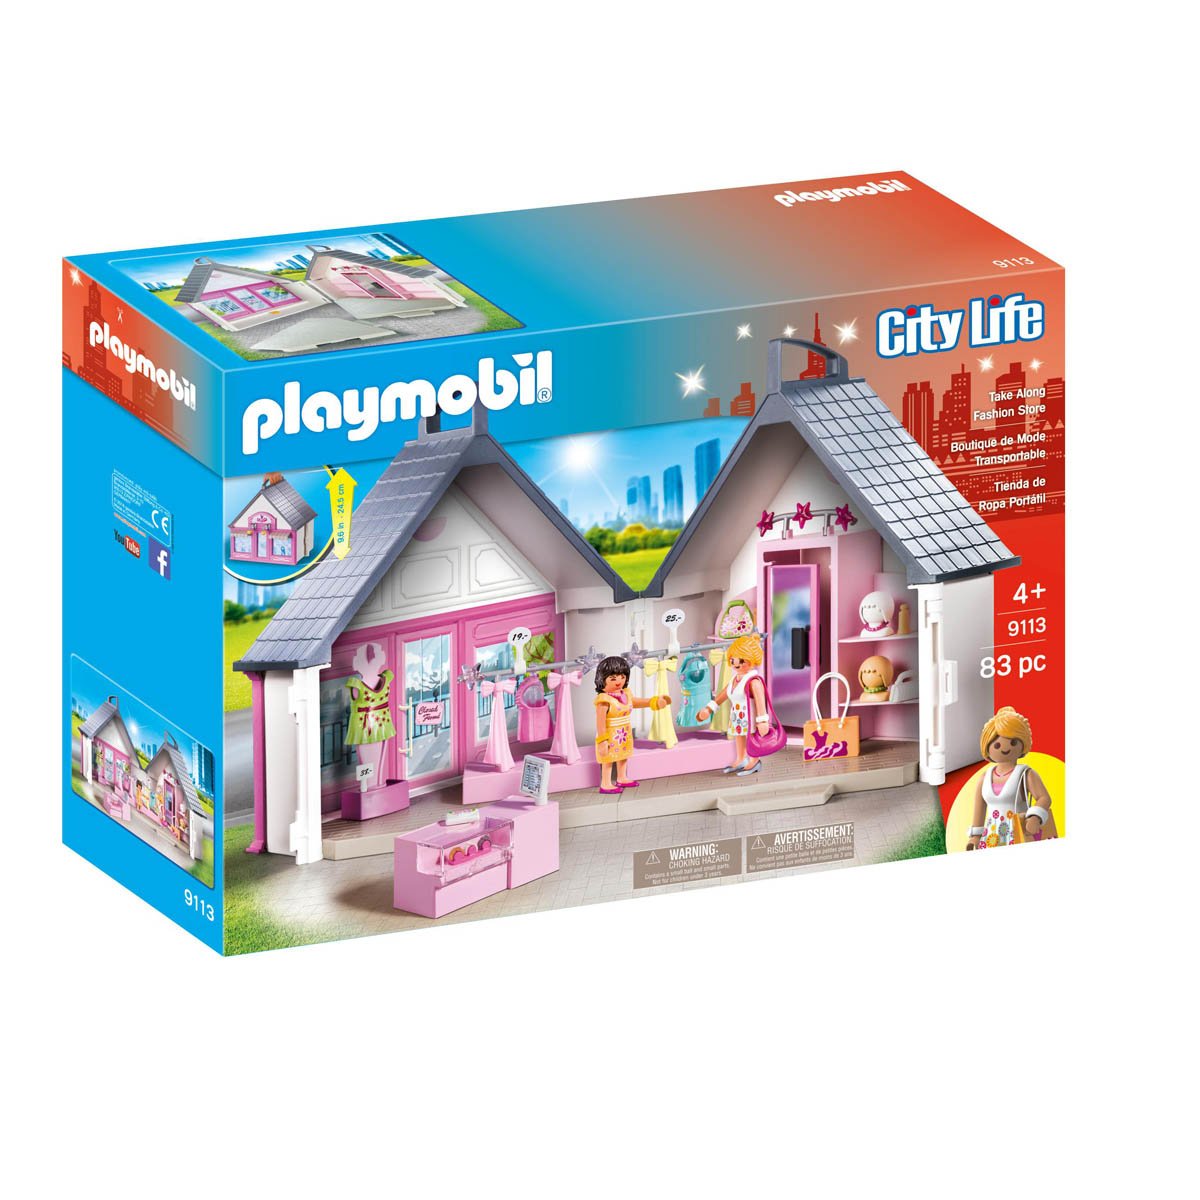 Tienda de Ropa Portatil Playmobil